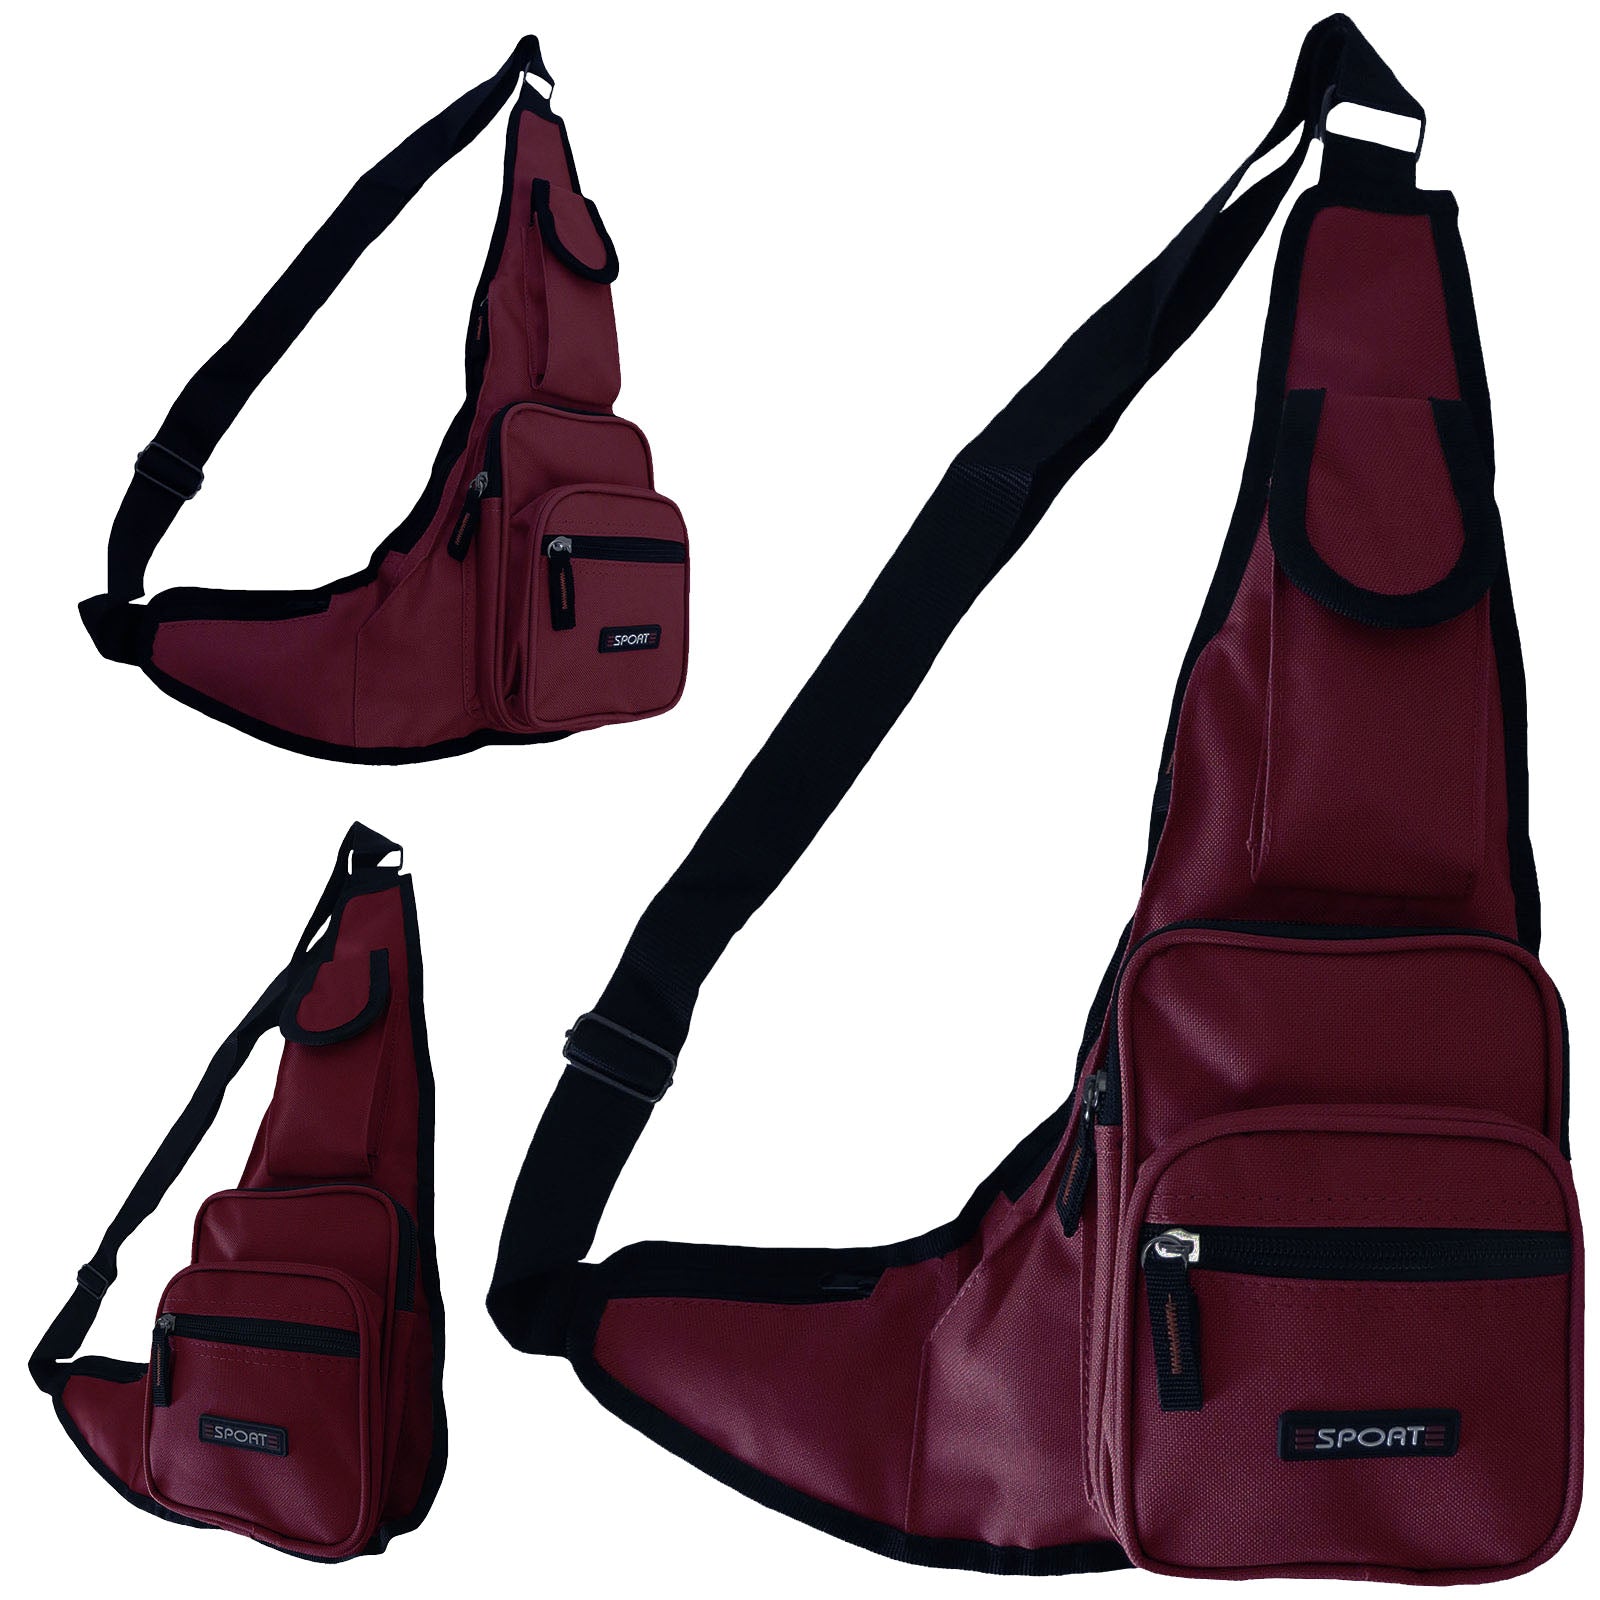 wholesale shoulder messenger bag sling organizer in wine